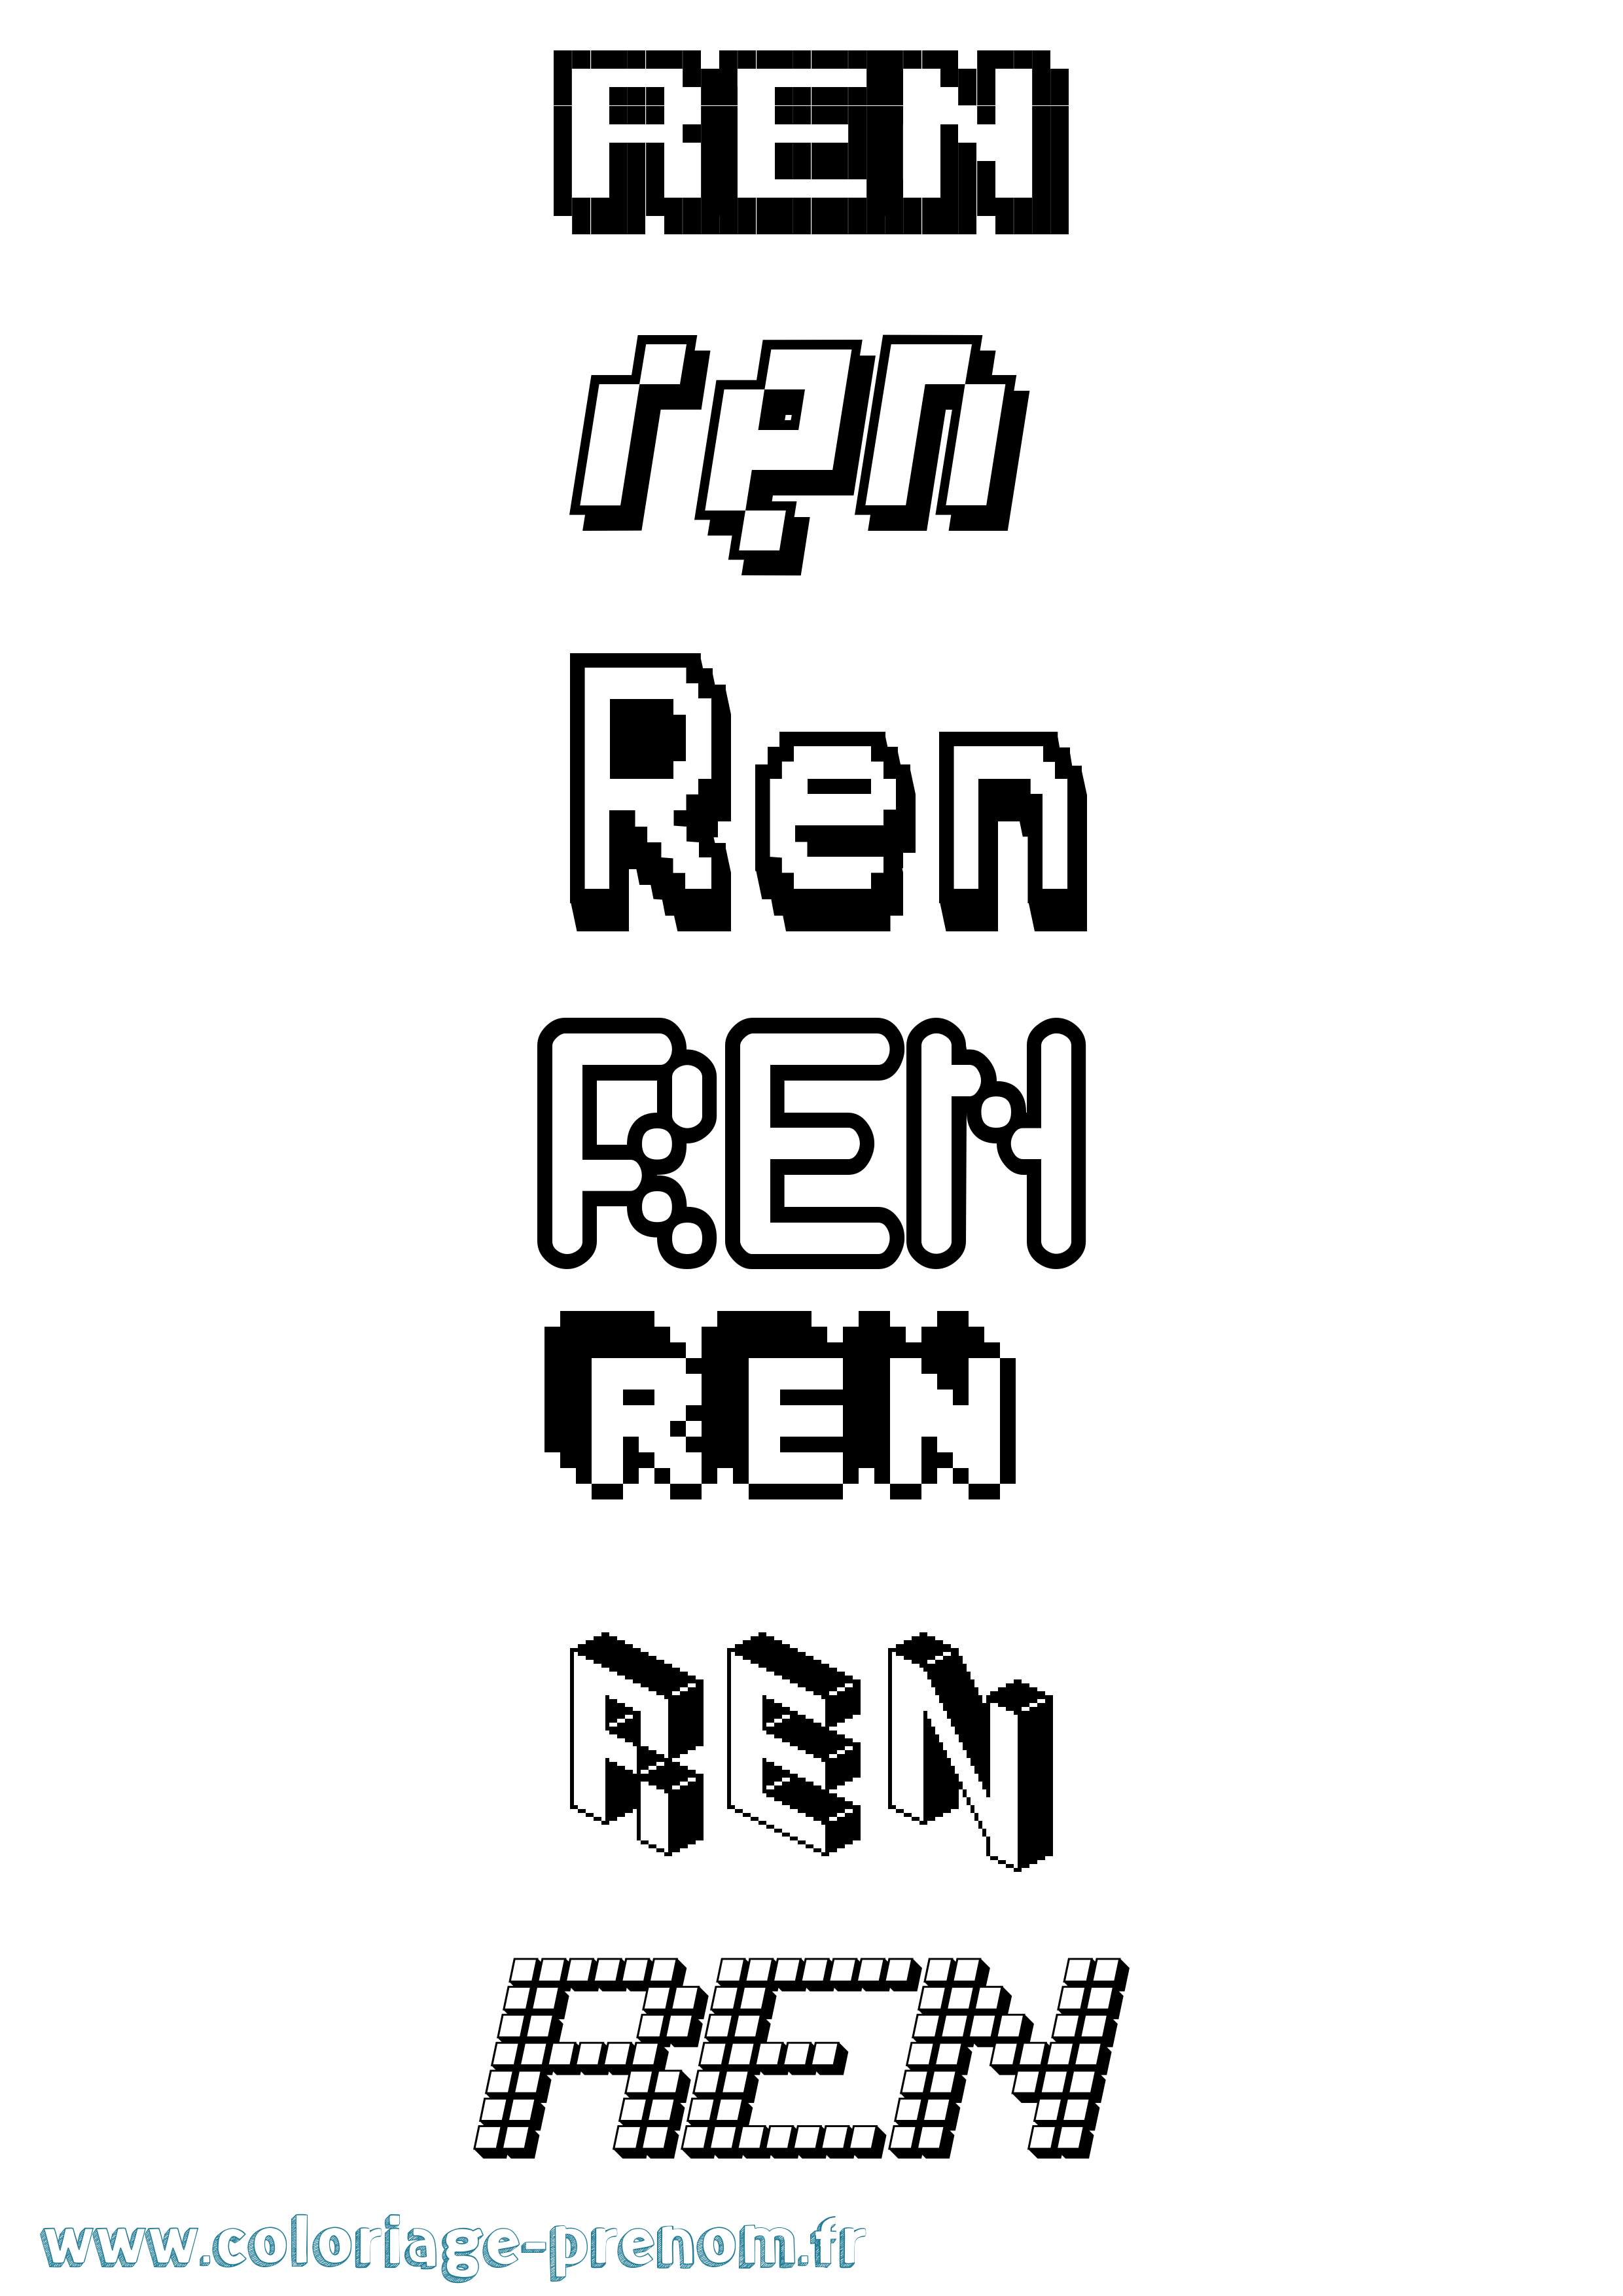 Coloriage prénom Ren Pixel